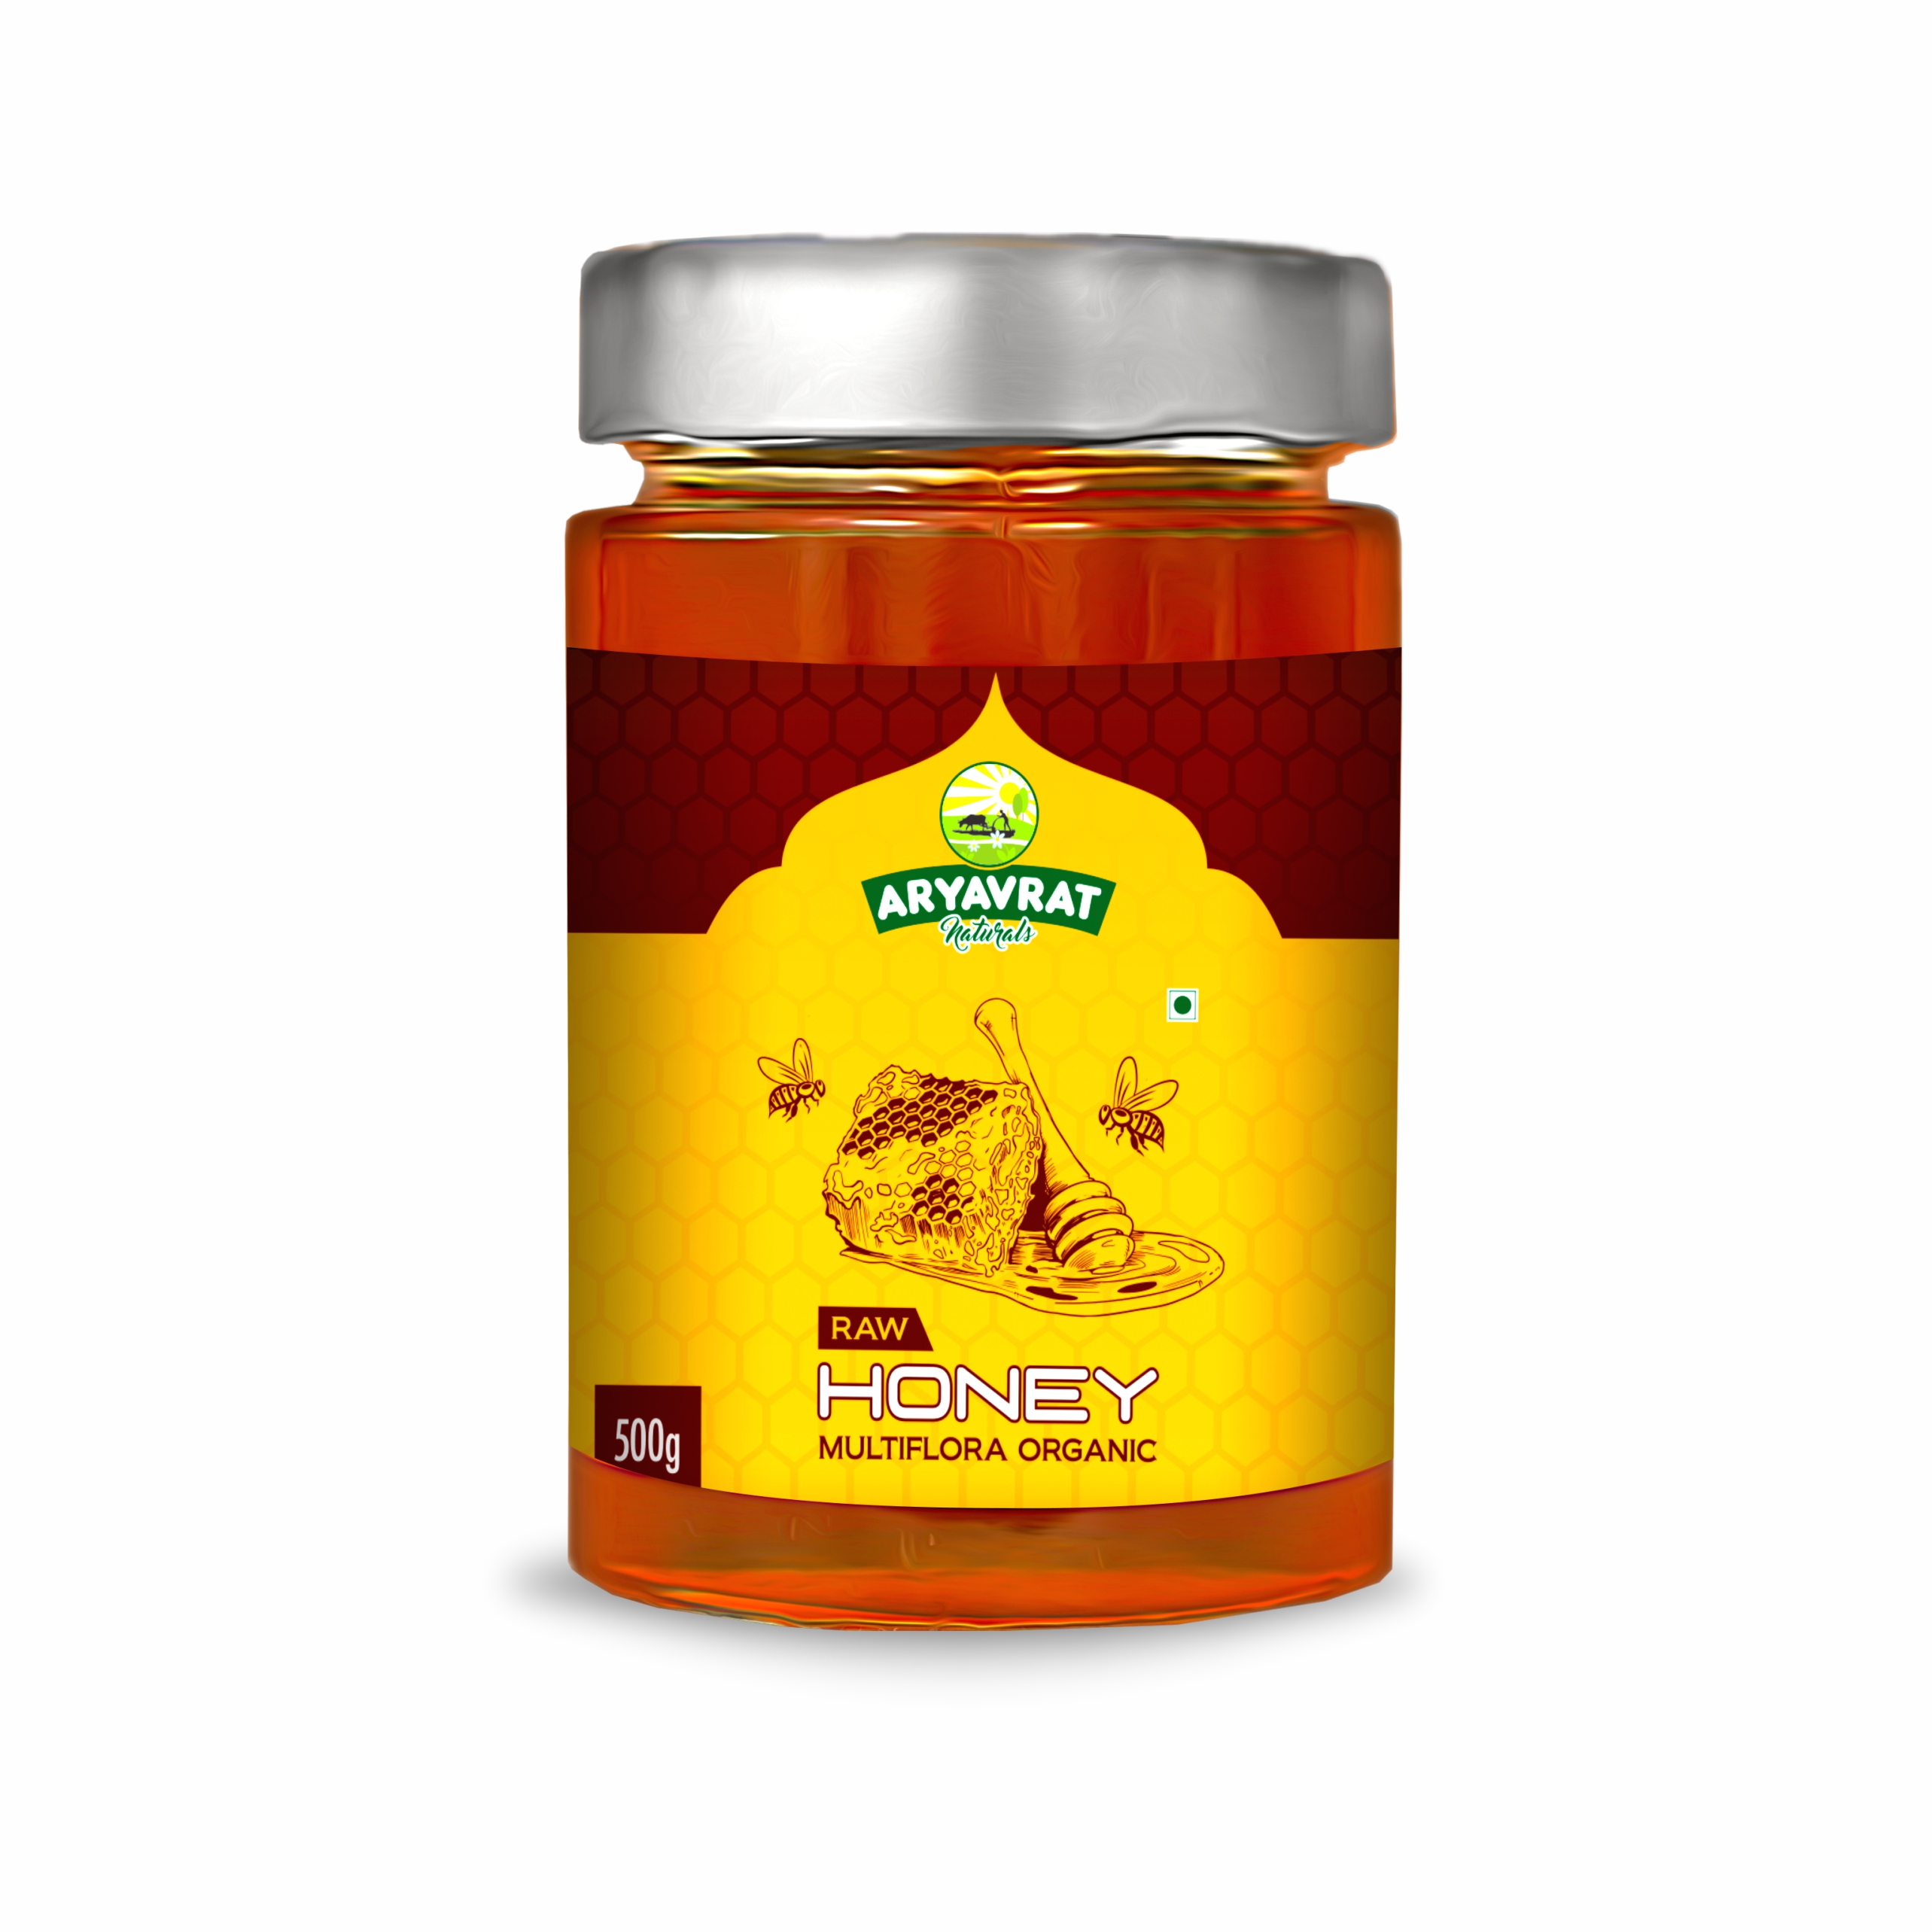 Buy Aryavrat Naturals Organic - Raw Honey 100% Pure Organic and Natural Multiflora Honey at Best Price Online